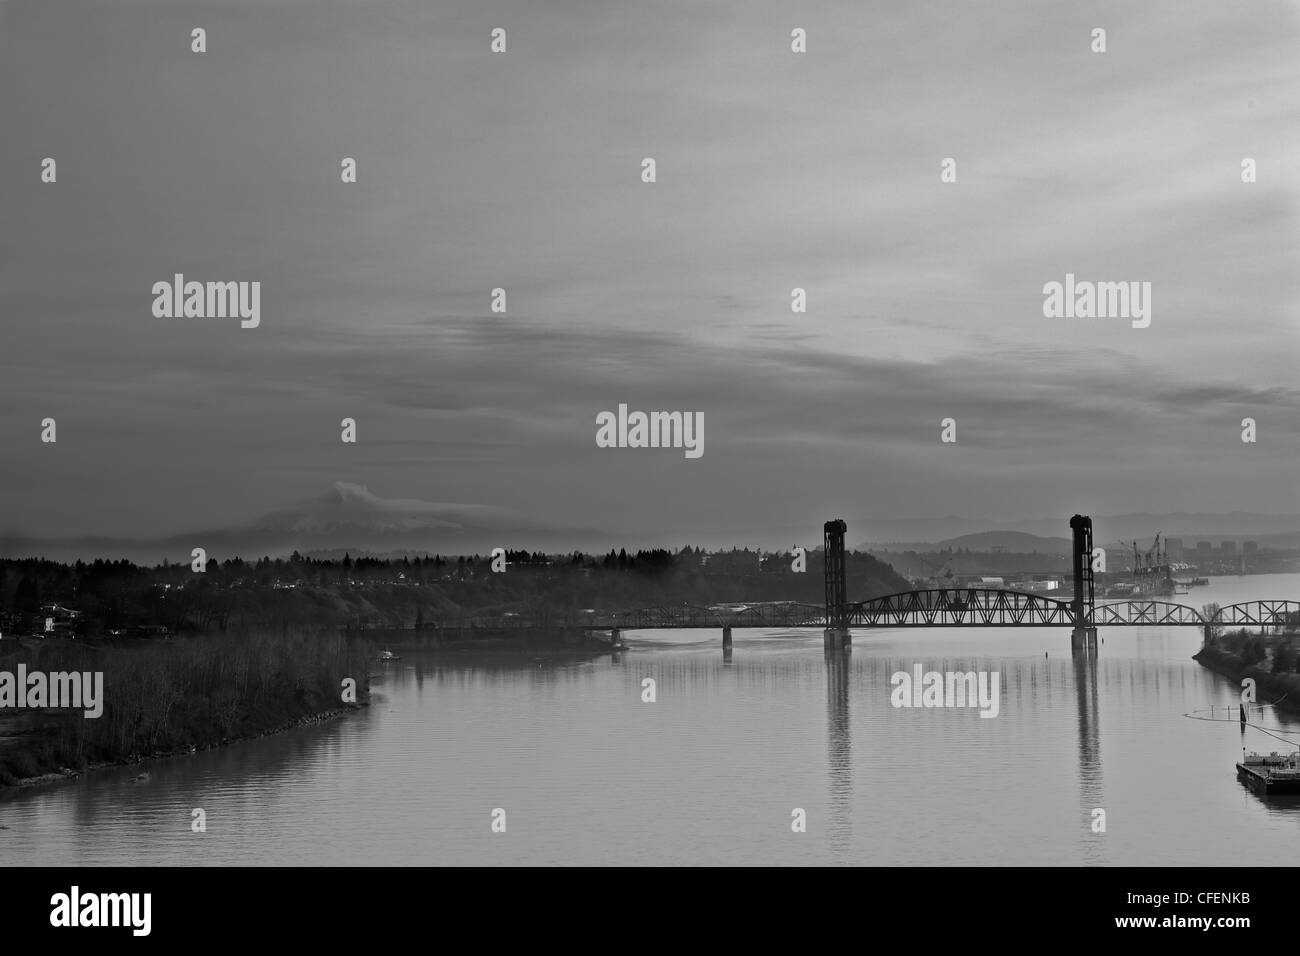 Imagen en blanco y negro de acero viejo puente levadizo en Portland en Willamette River con fondo nublado Foto de stock